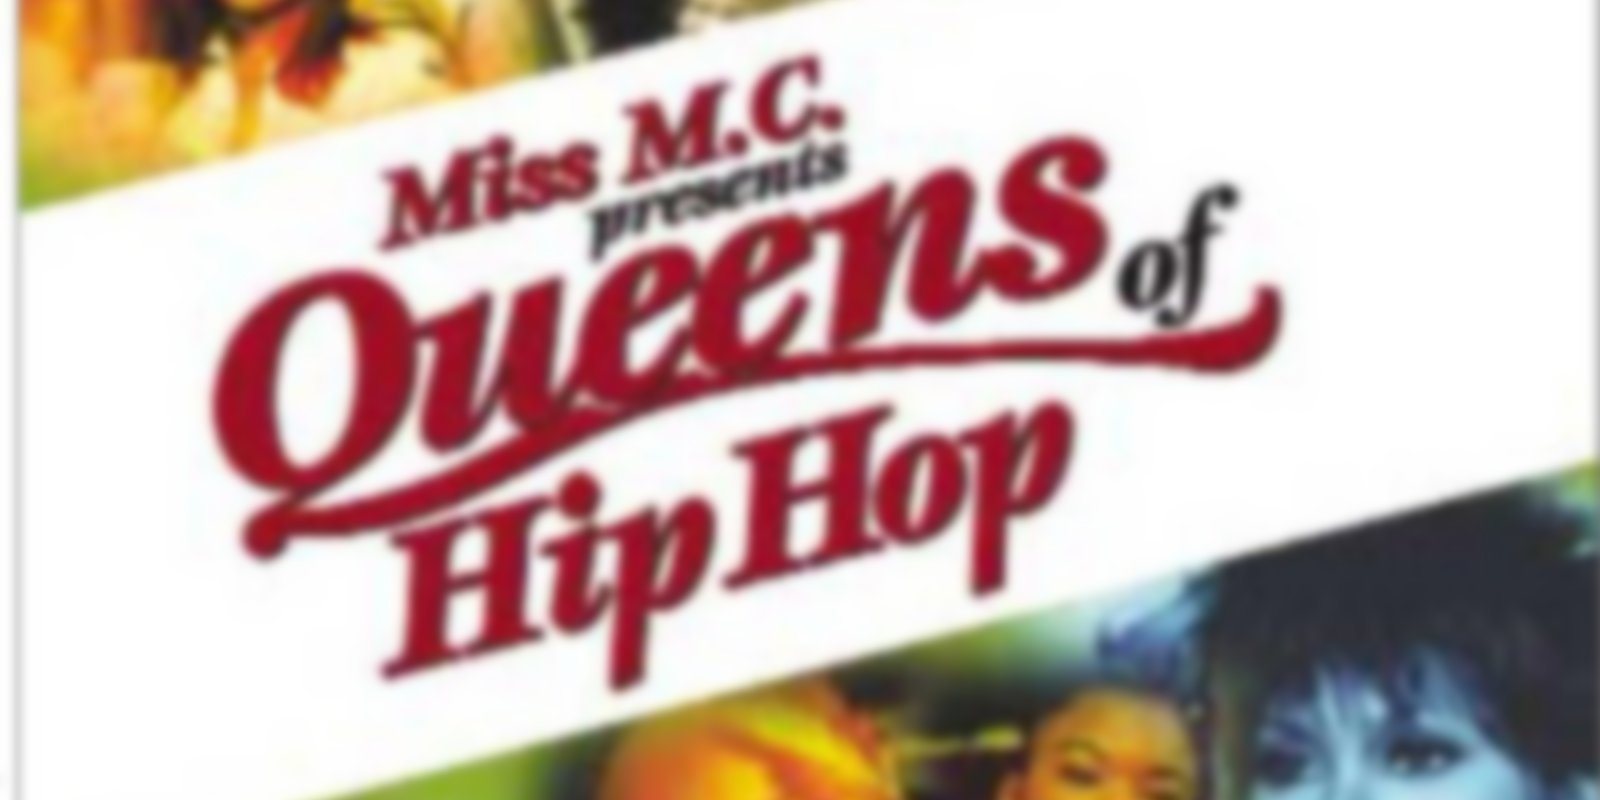 Queens of Hip Hop